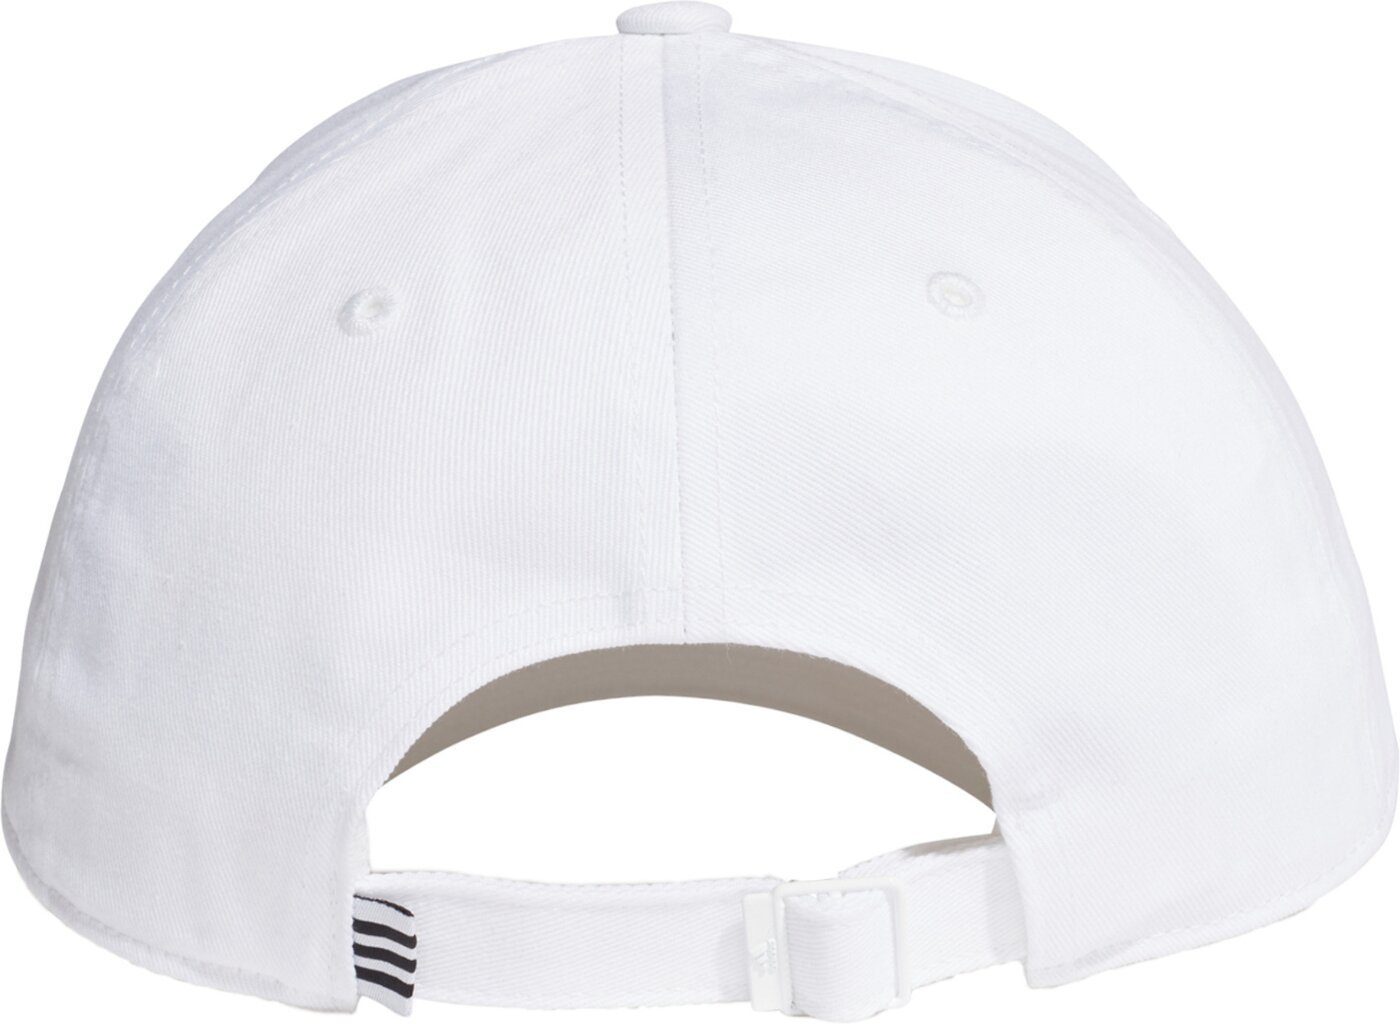 BBALL COT CAP Sportswear Cap Baseball adidas